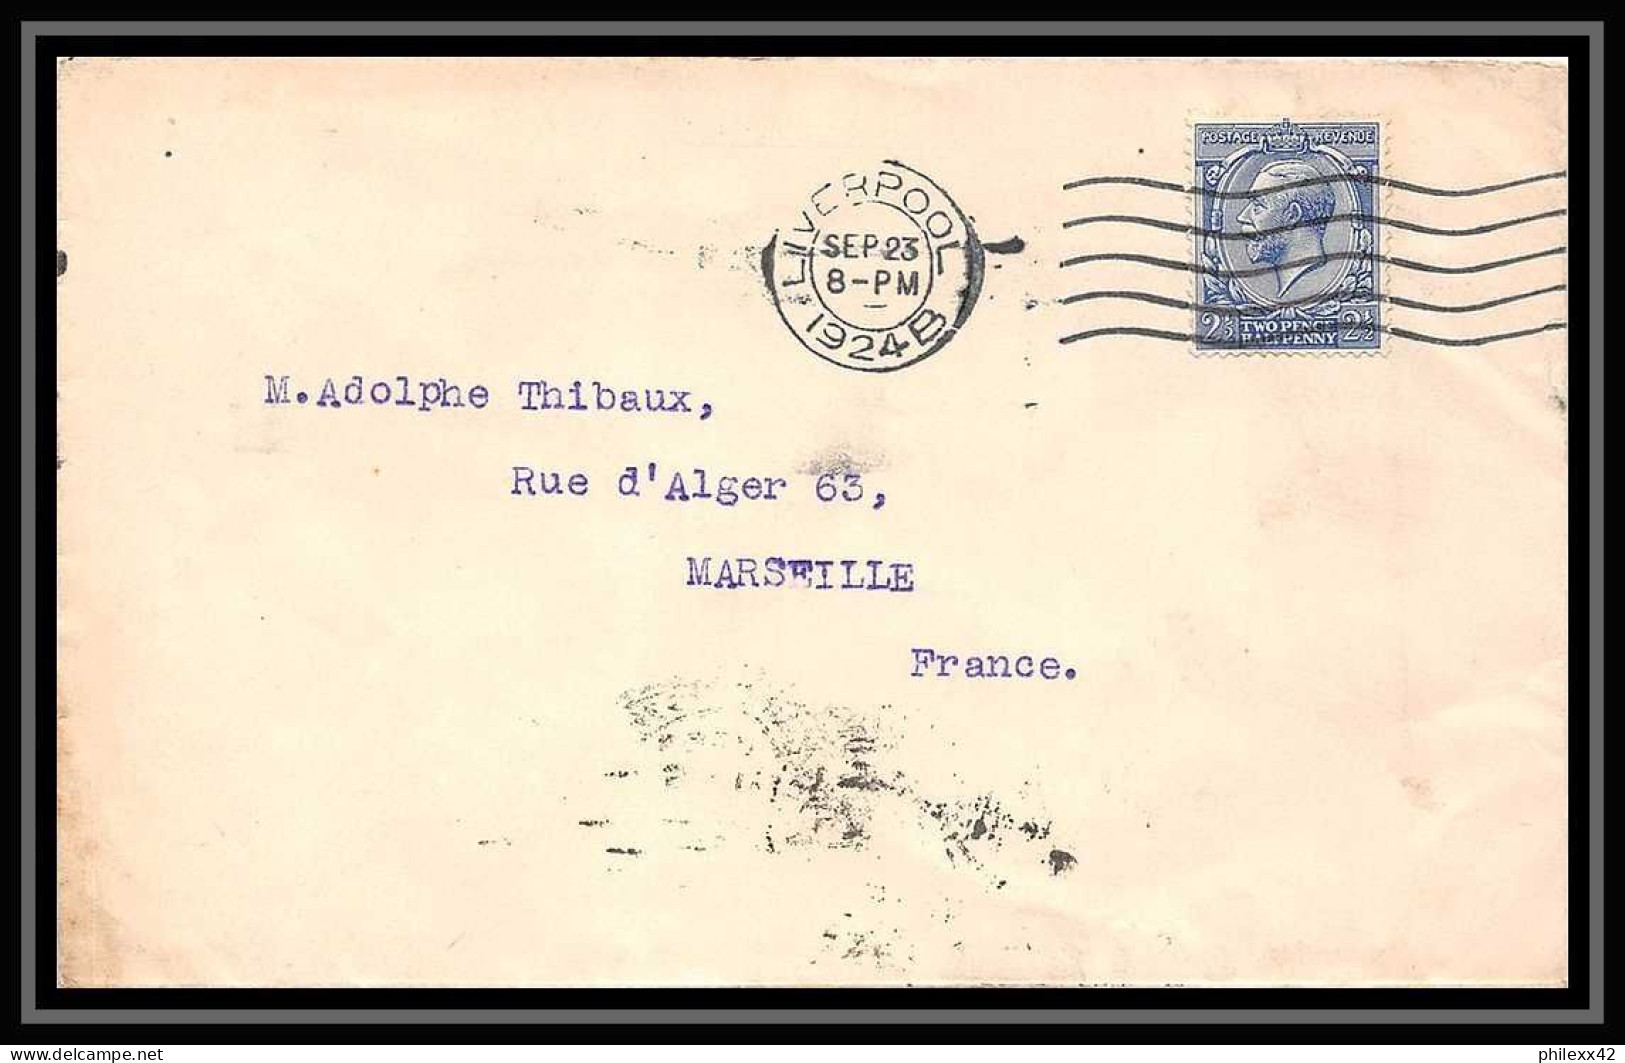 115639 lot de 13 Lettres cover Bouches du rhone Marseille Flier secap krag Carte postale (postcard) etranger..